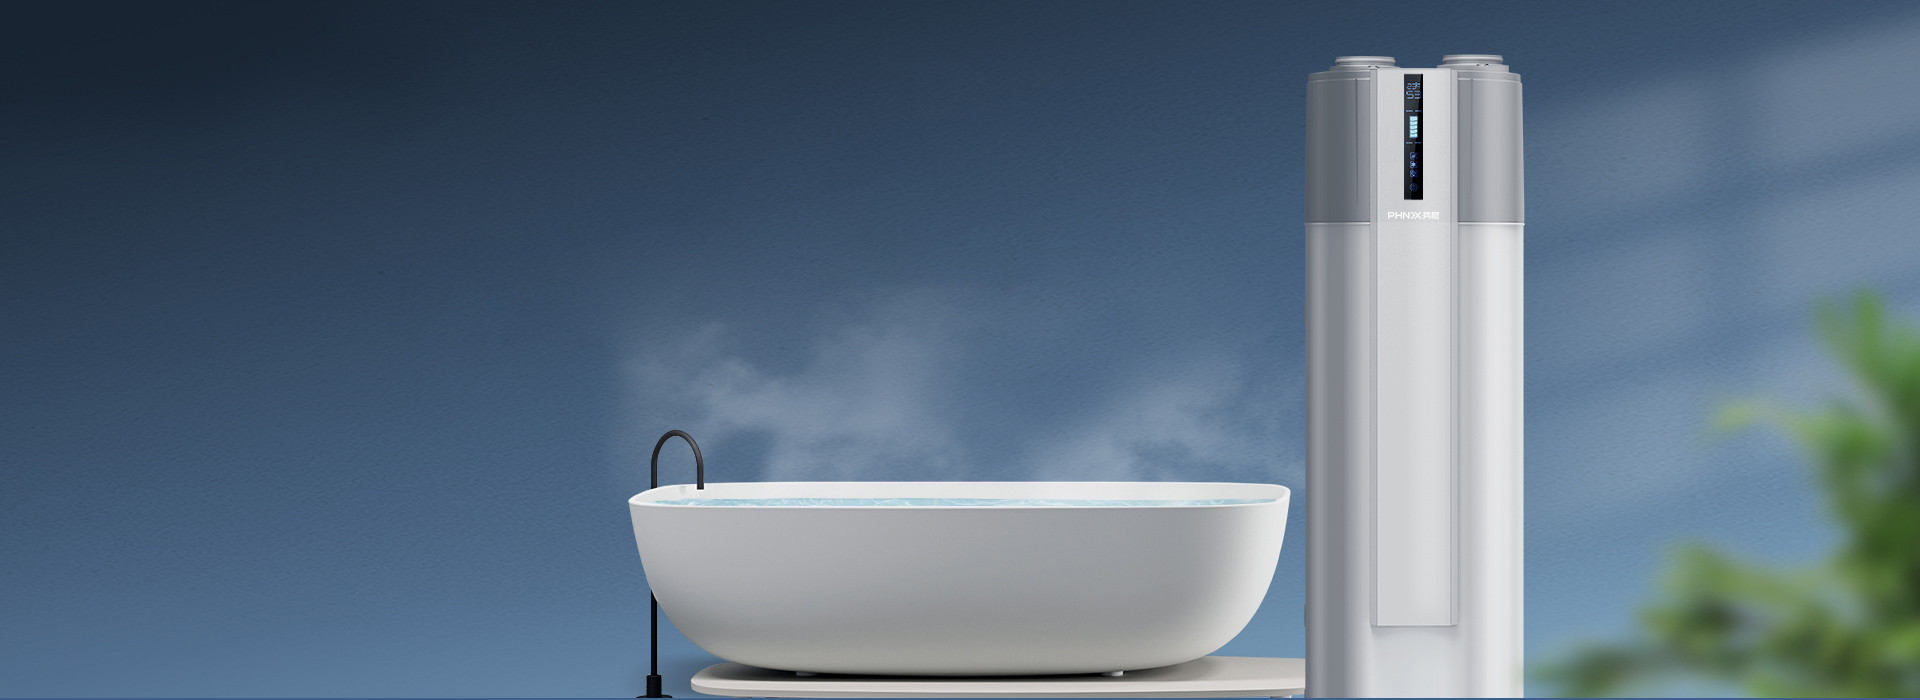 芬尼空气能热水器新尊贵型 200L舒适恒温沐浴